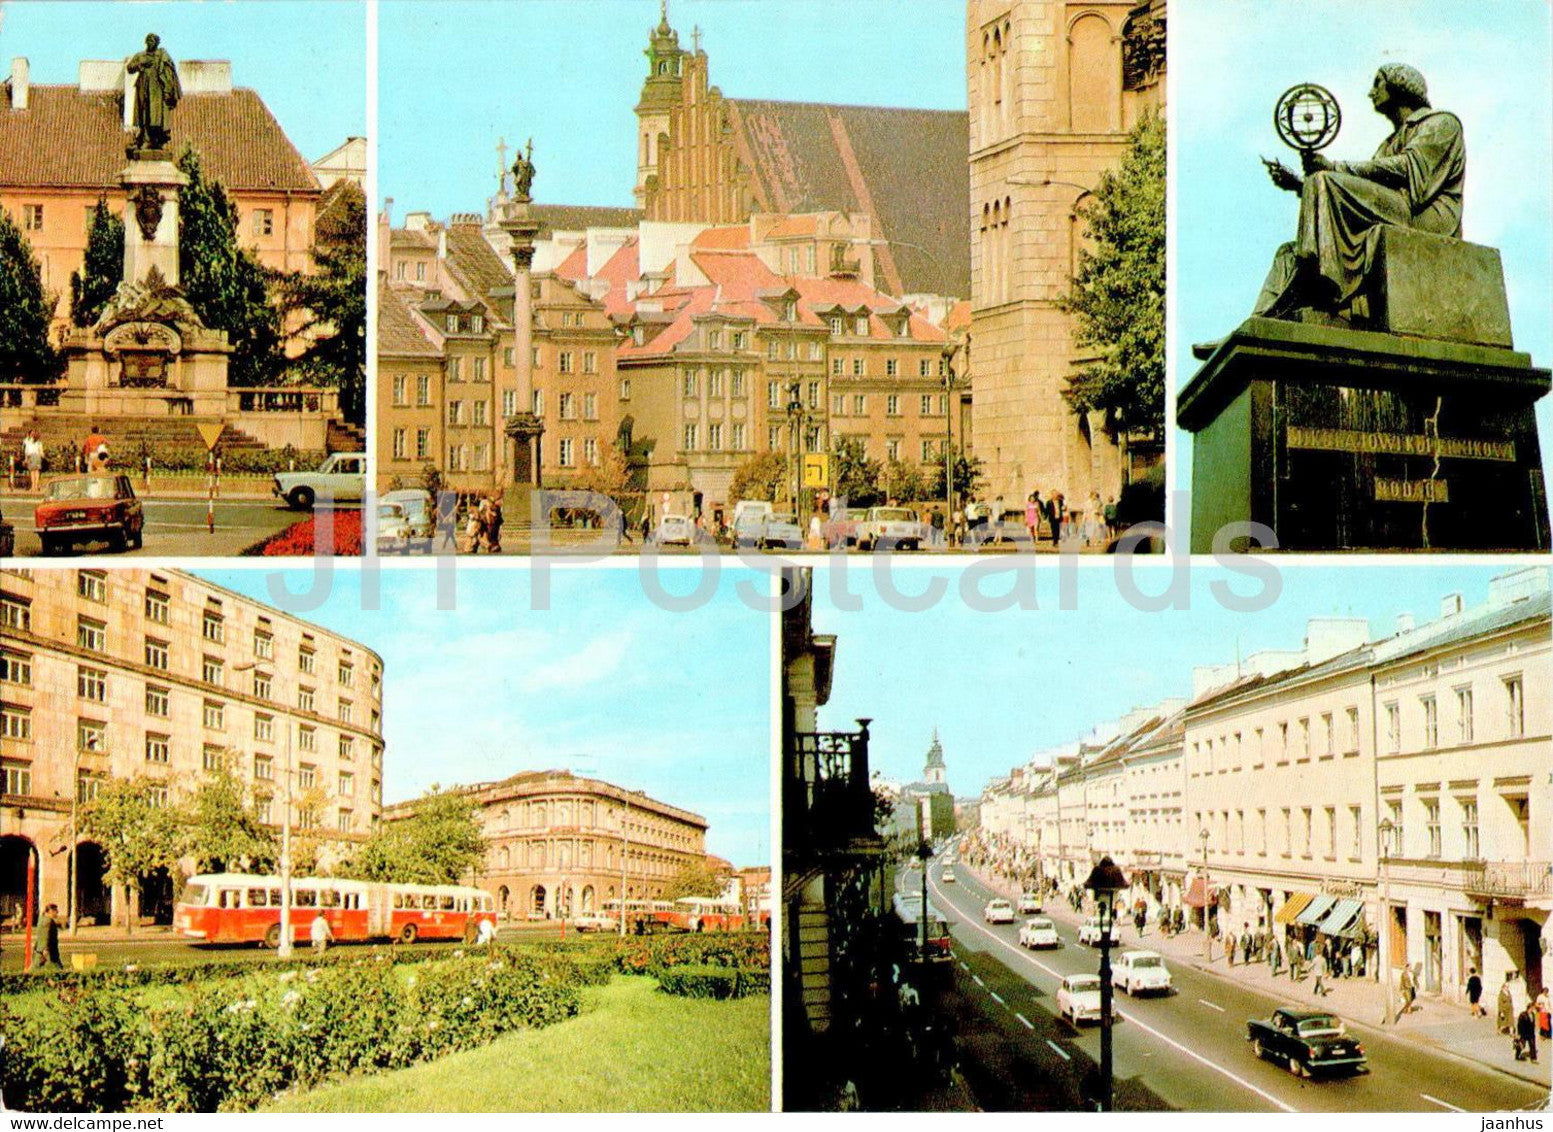 Warsaw - Warszawa - Pomnik Adama Mickiewicza - Plac Zamkowy - Ulica Krakowskie - bus - Poland - unused - JH Postcards